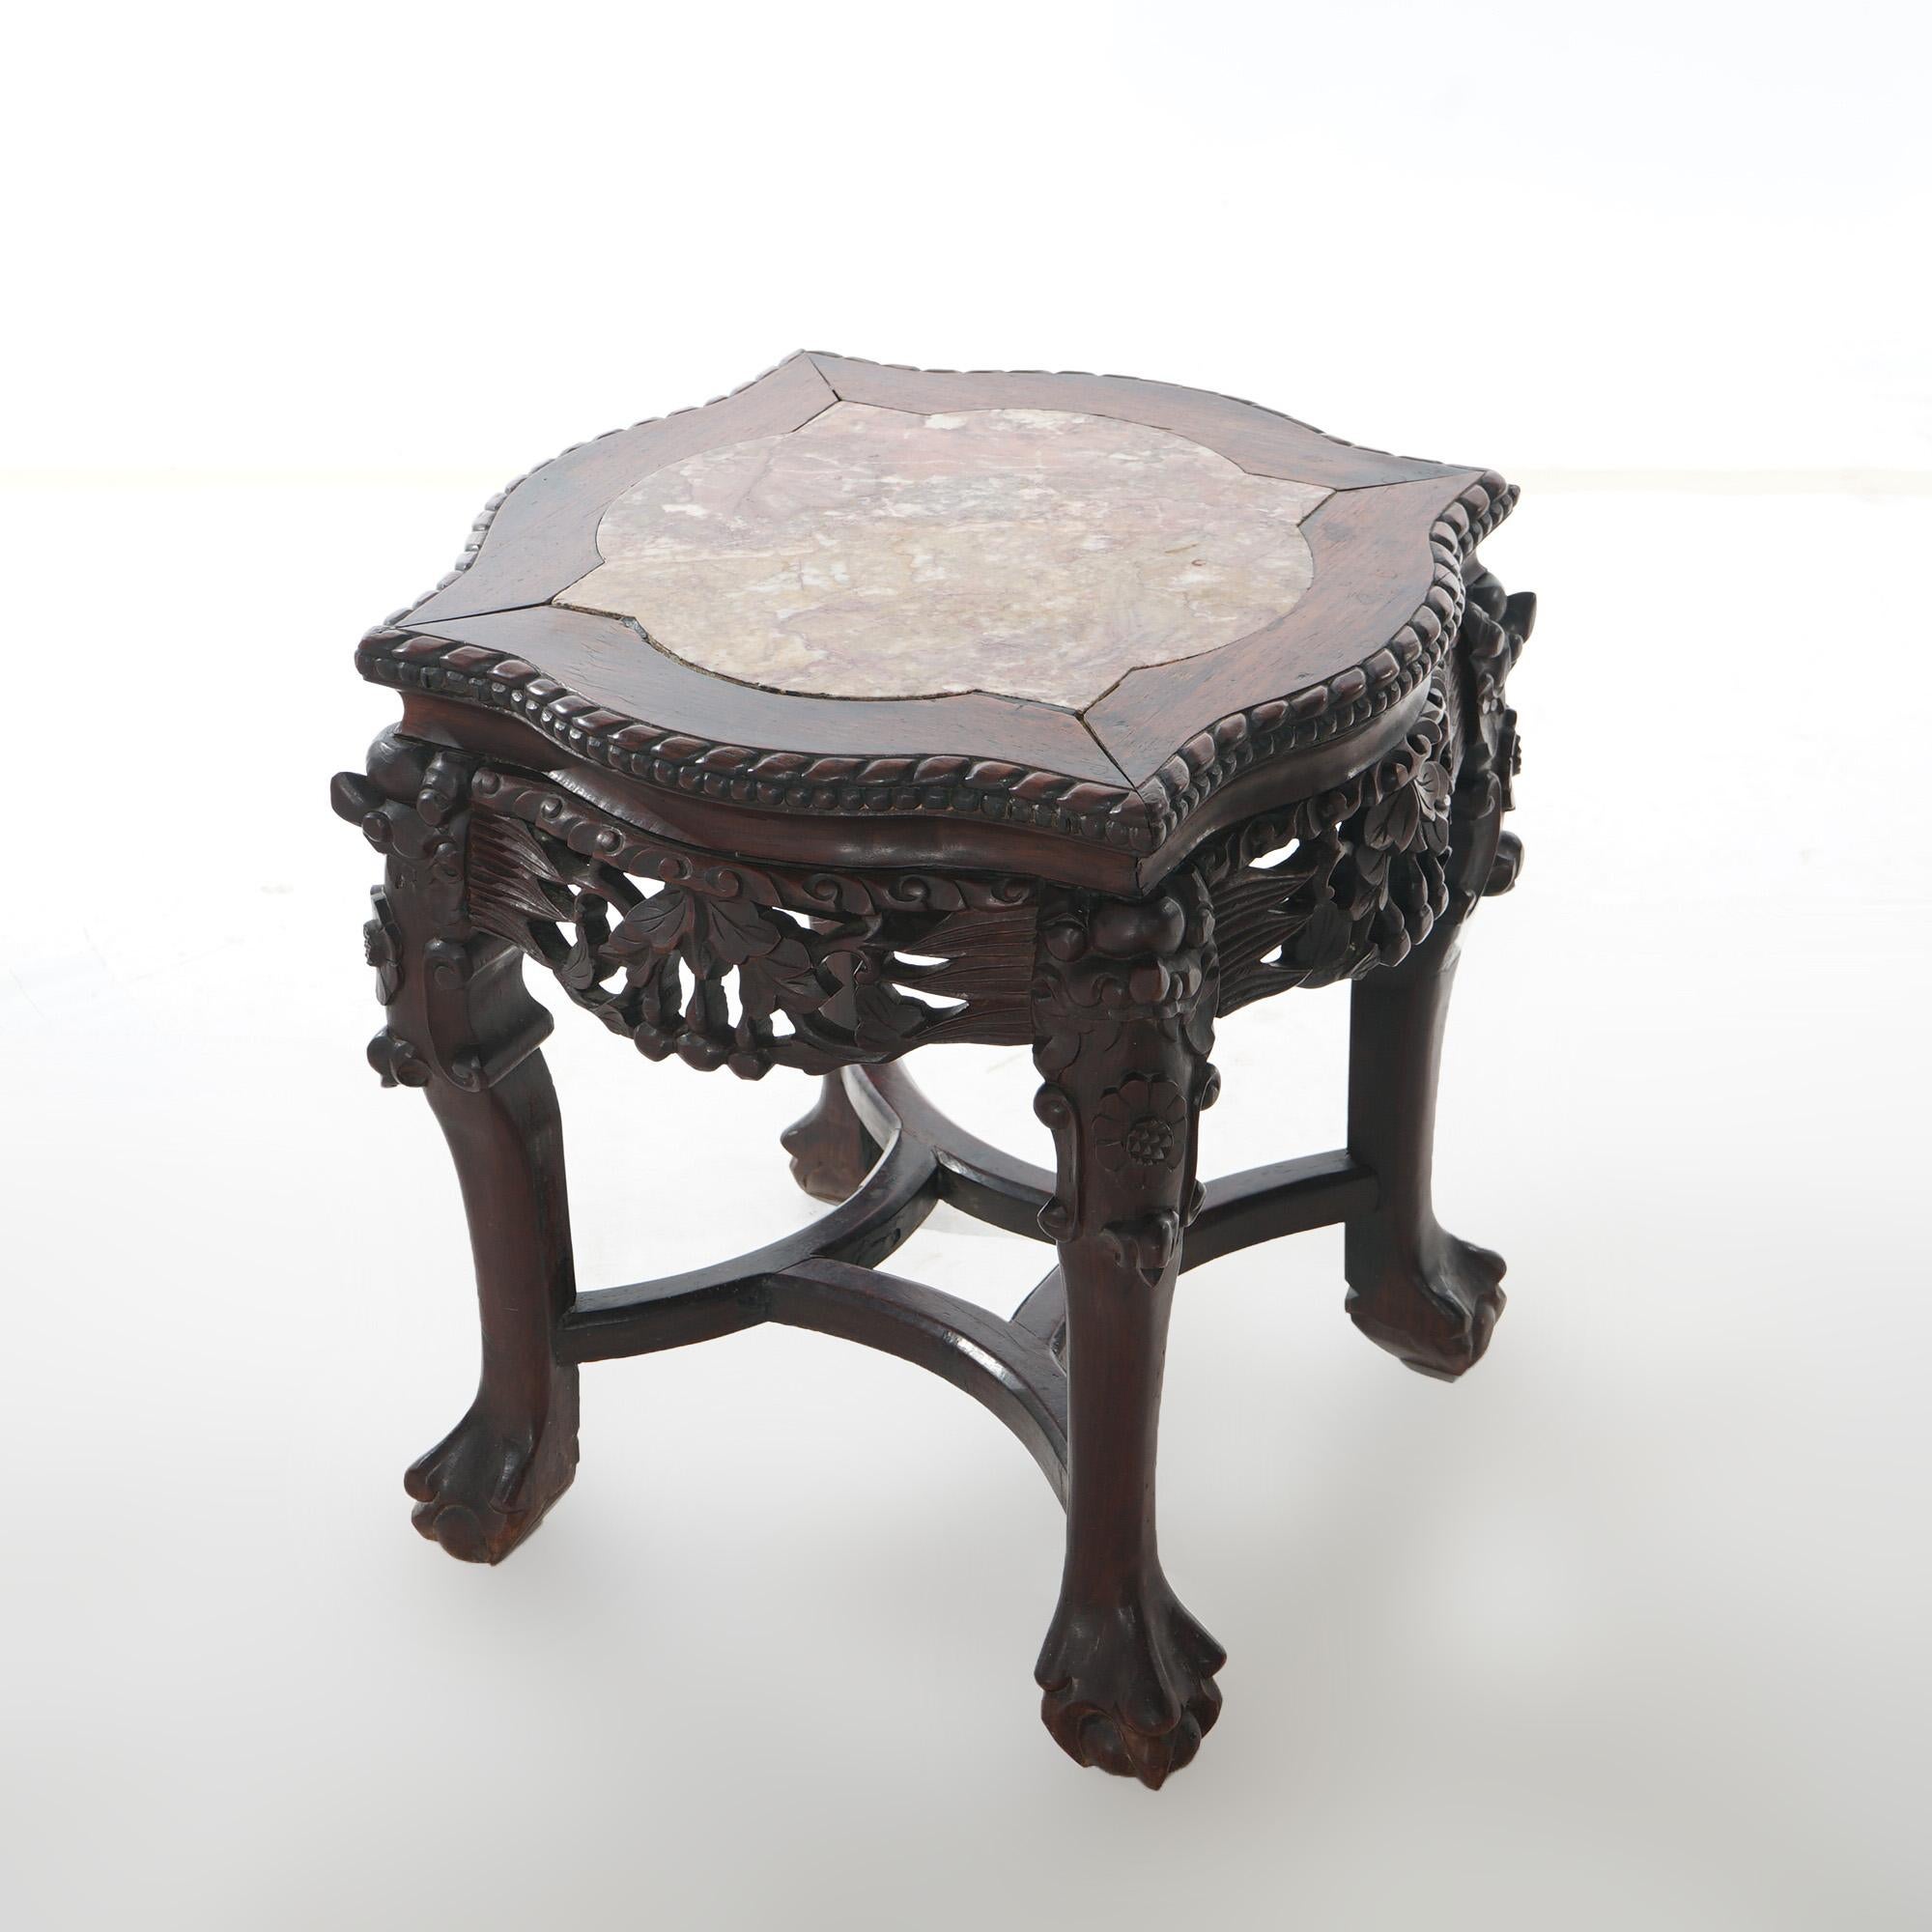 Eine antike chinesische niedrigen Tisch bietet Palisander Konstruktion mit geformten Bilderrahmen Marmorplatte mit Perlen trimmen über tief geschnitzten blattförmigen Rock und hob auf Tatzenfüße, c1920

Maße: 18''H x 20,5''B x 20,5''T